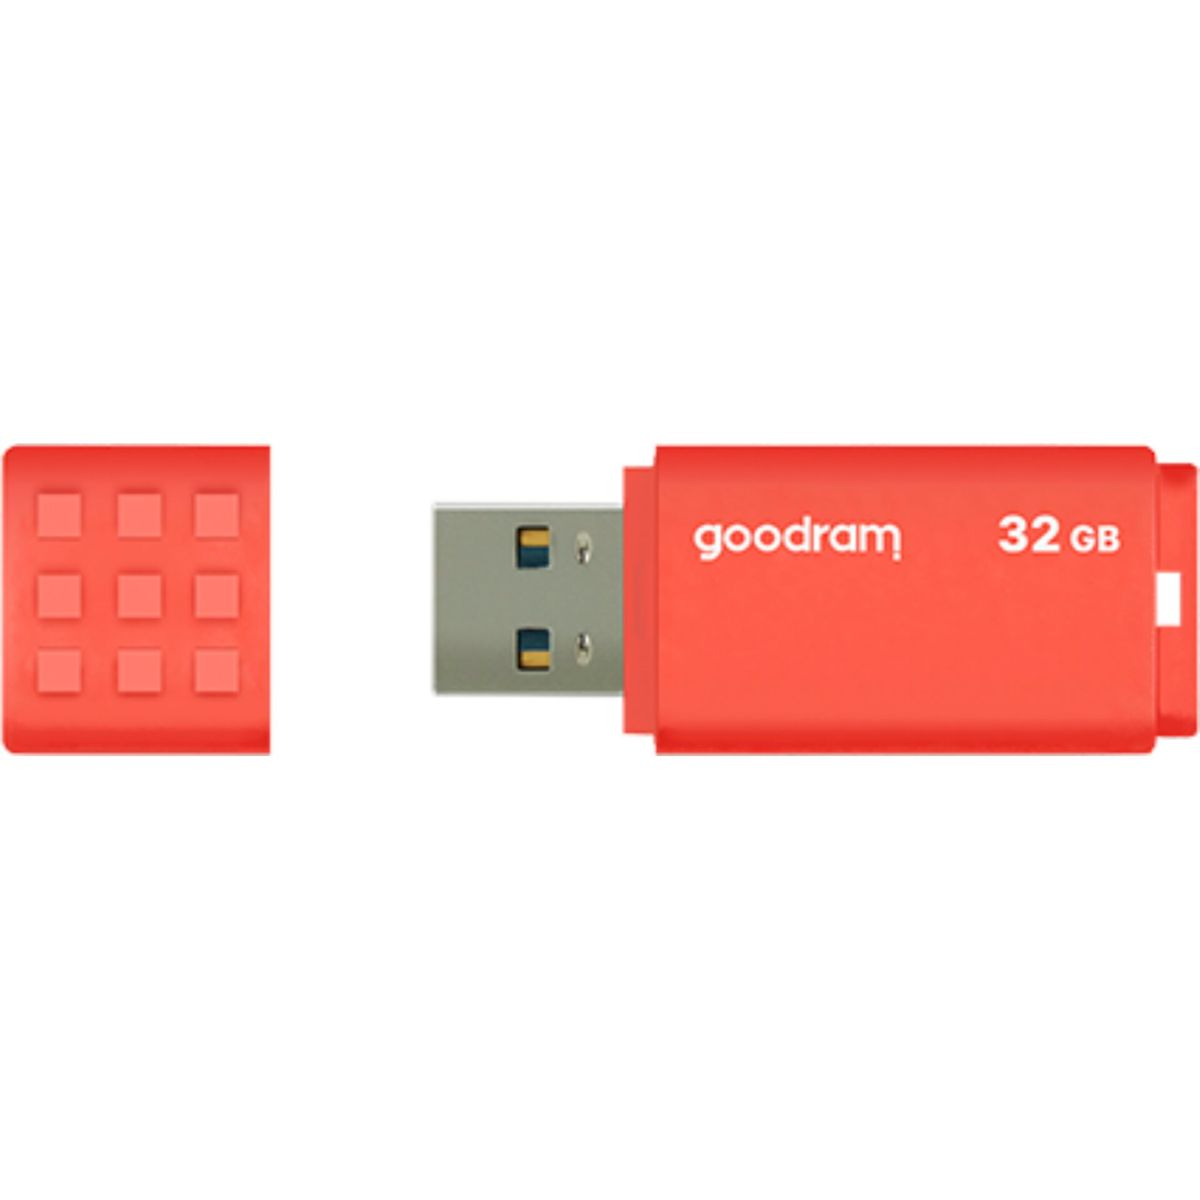 GOODRAM UME3 USB 3.0 32GB Stick GB) USB Orange (orange, 32